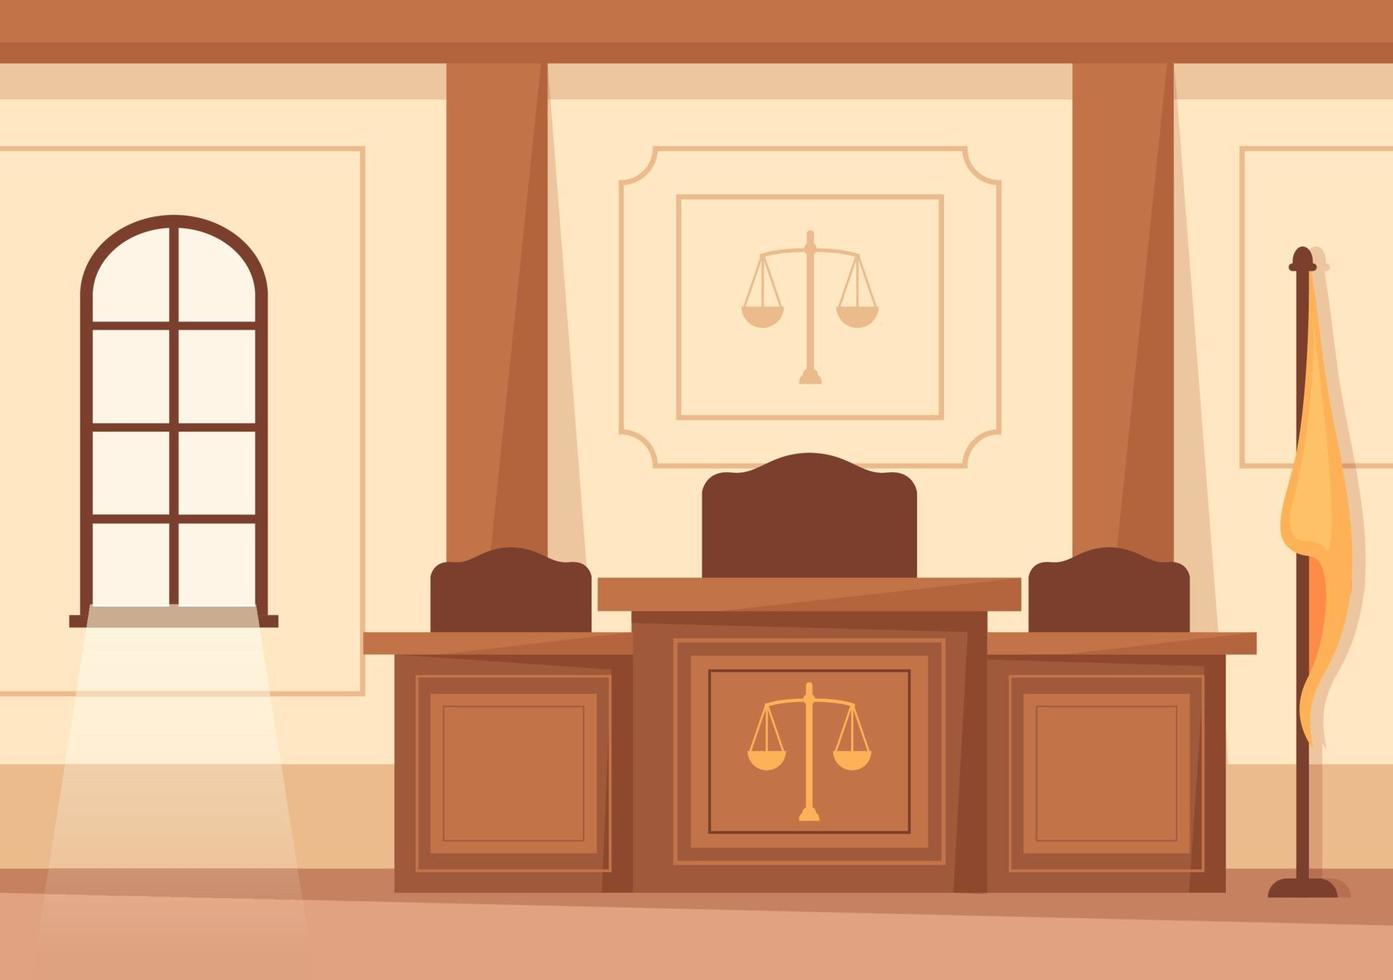 intérieur de la salle d'audience avec table de juge ou de jury, drapeau et marteau de juge en bois en illustration de dessin animé plat vecteur